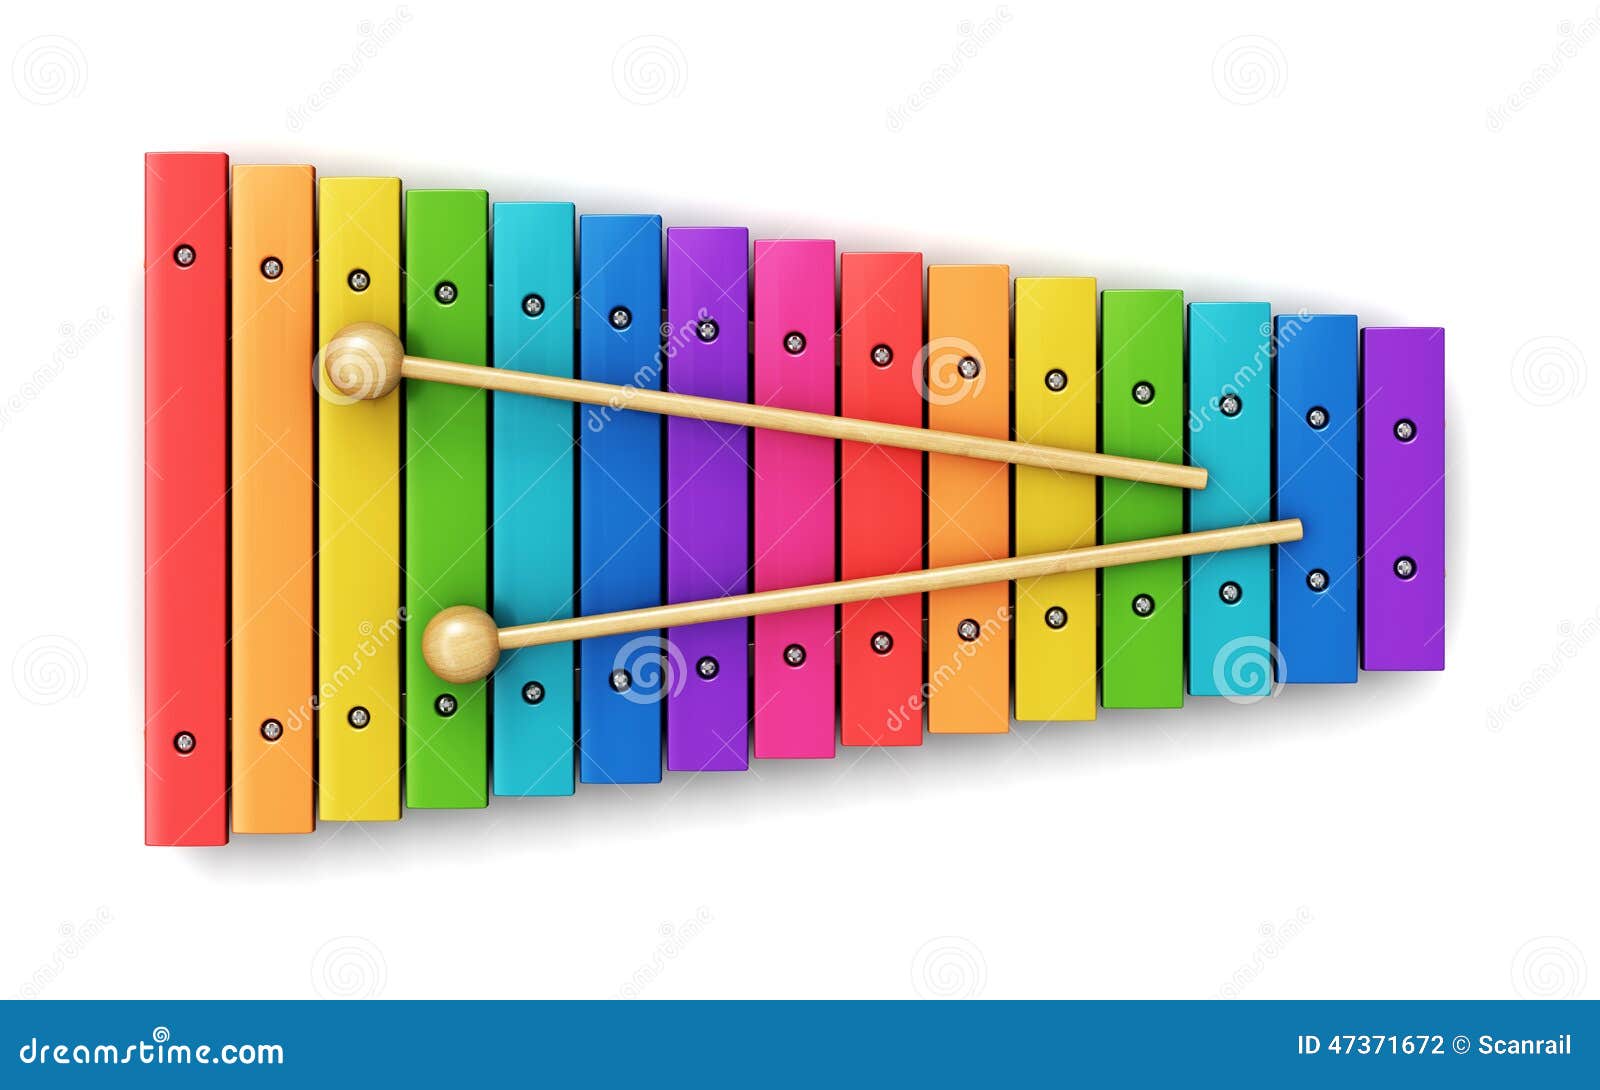 Xylophone Stock Illustration - Image: 47371672